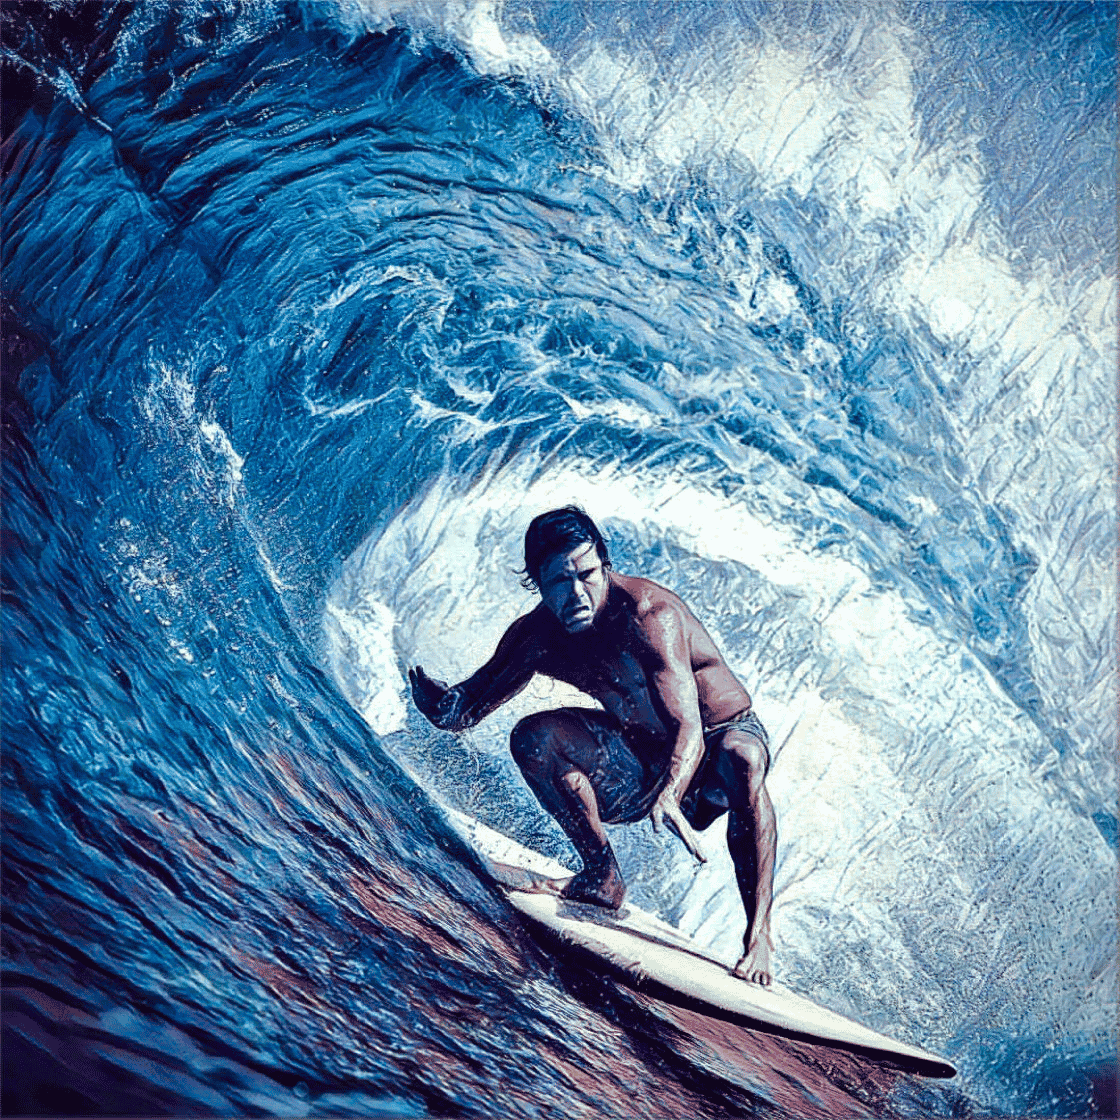 最安価格挑戦 Roger Anderson Hawaii Surfboard - lecardinalresort.com